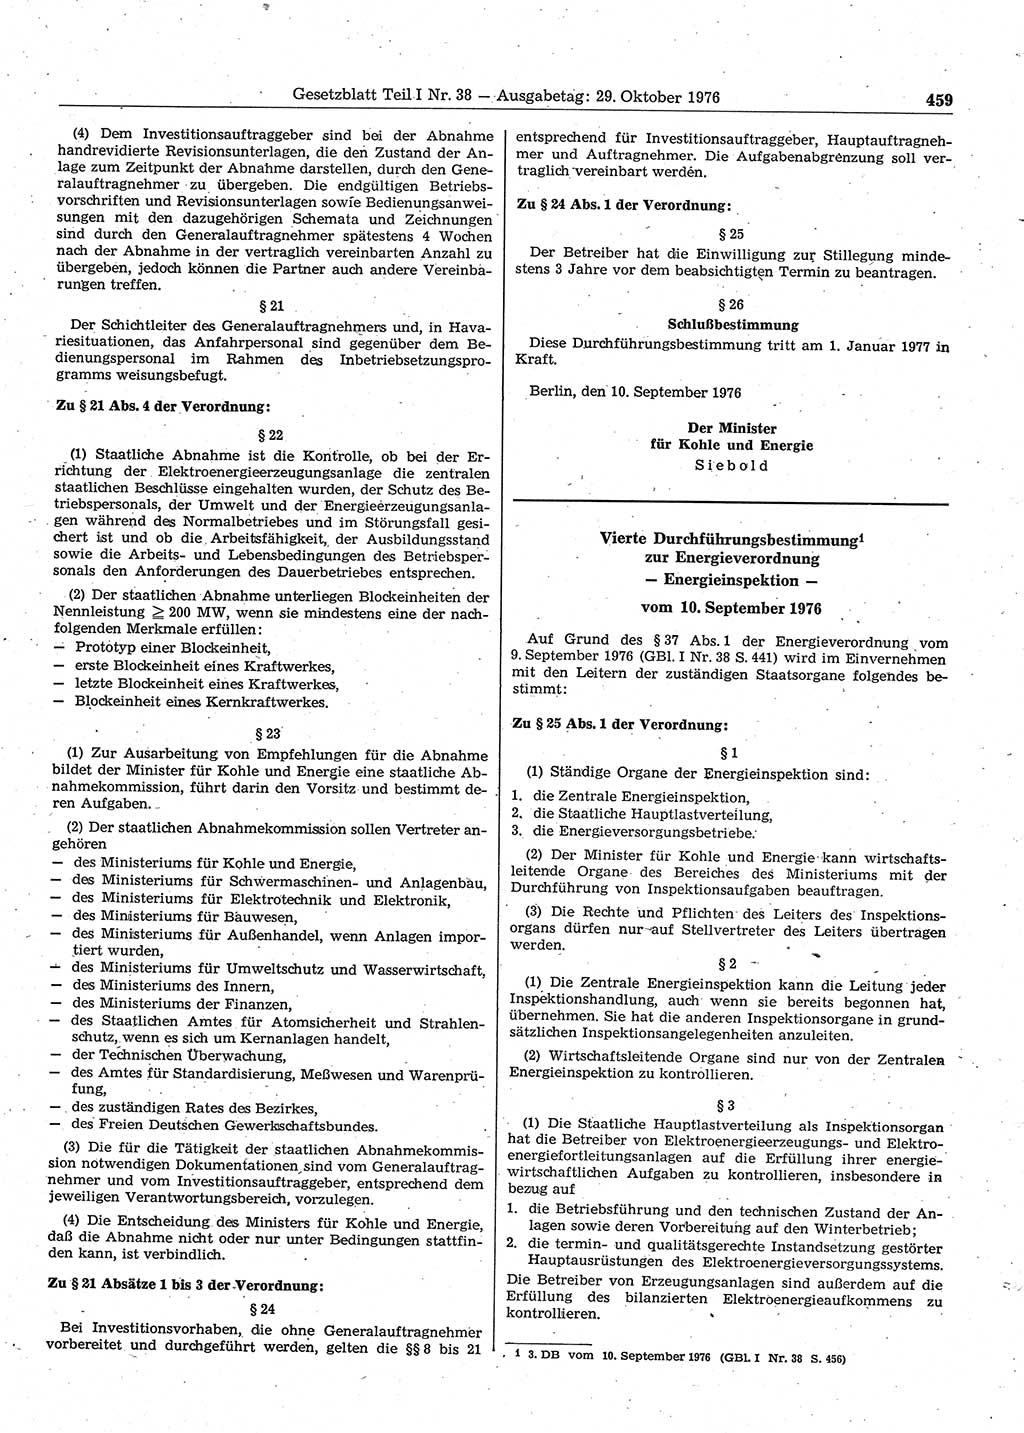 Gesetzblatt (GBl.) der Deutschen Demokratischen Republik (DDR) Teil Ⅰ 1976, Seite 459 (GBl. DDR Ⅰ 1976, S. 459)